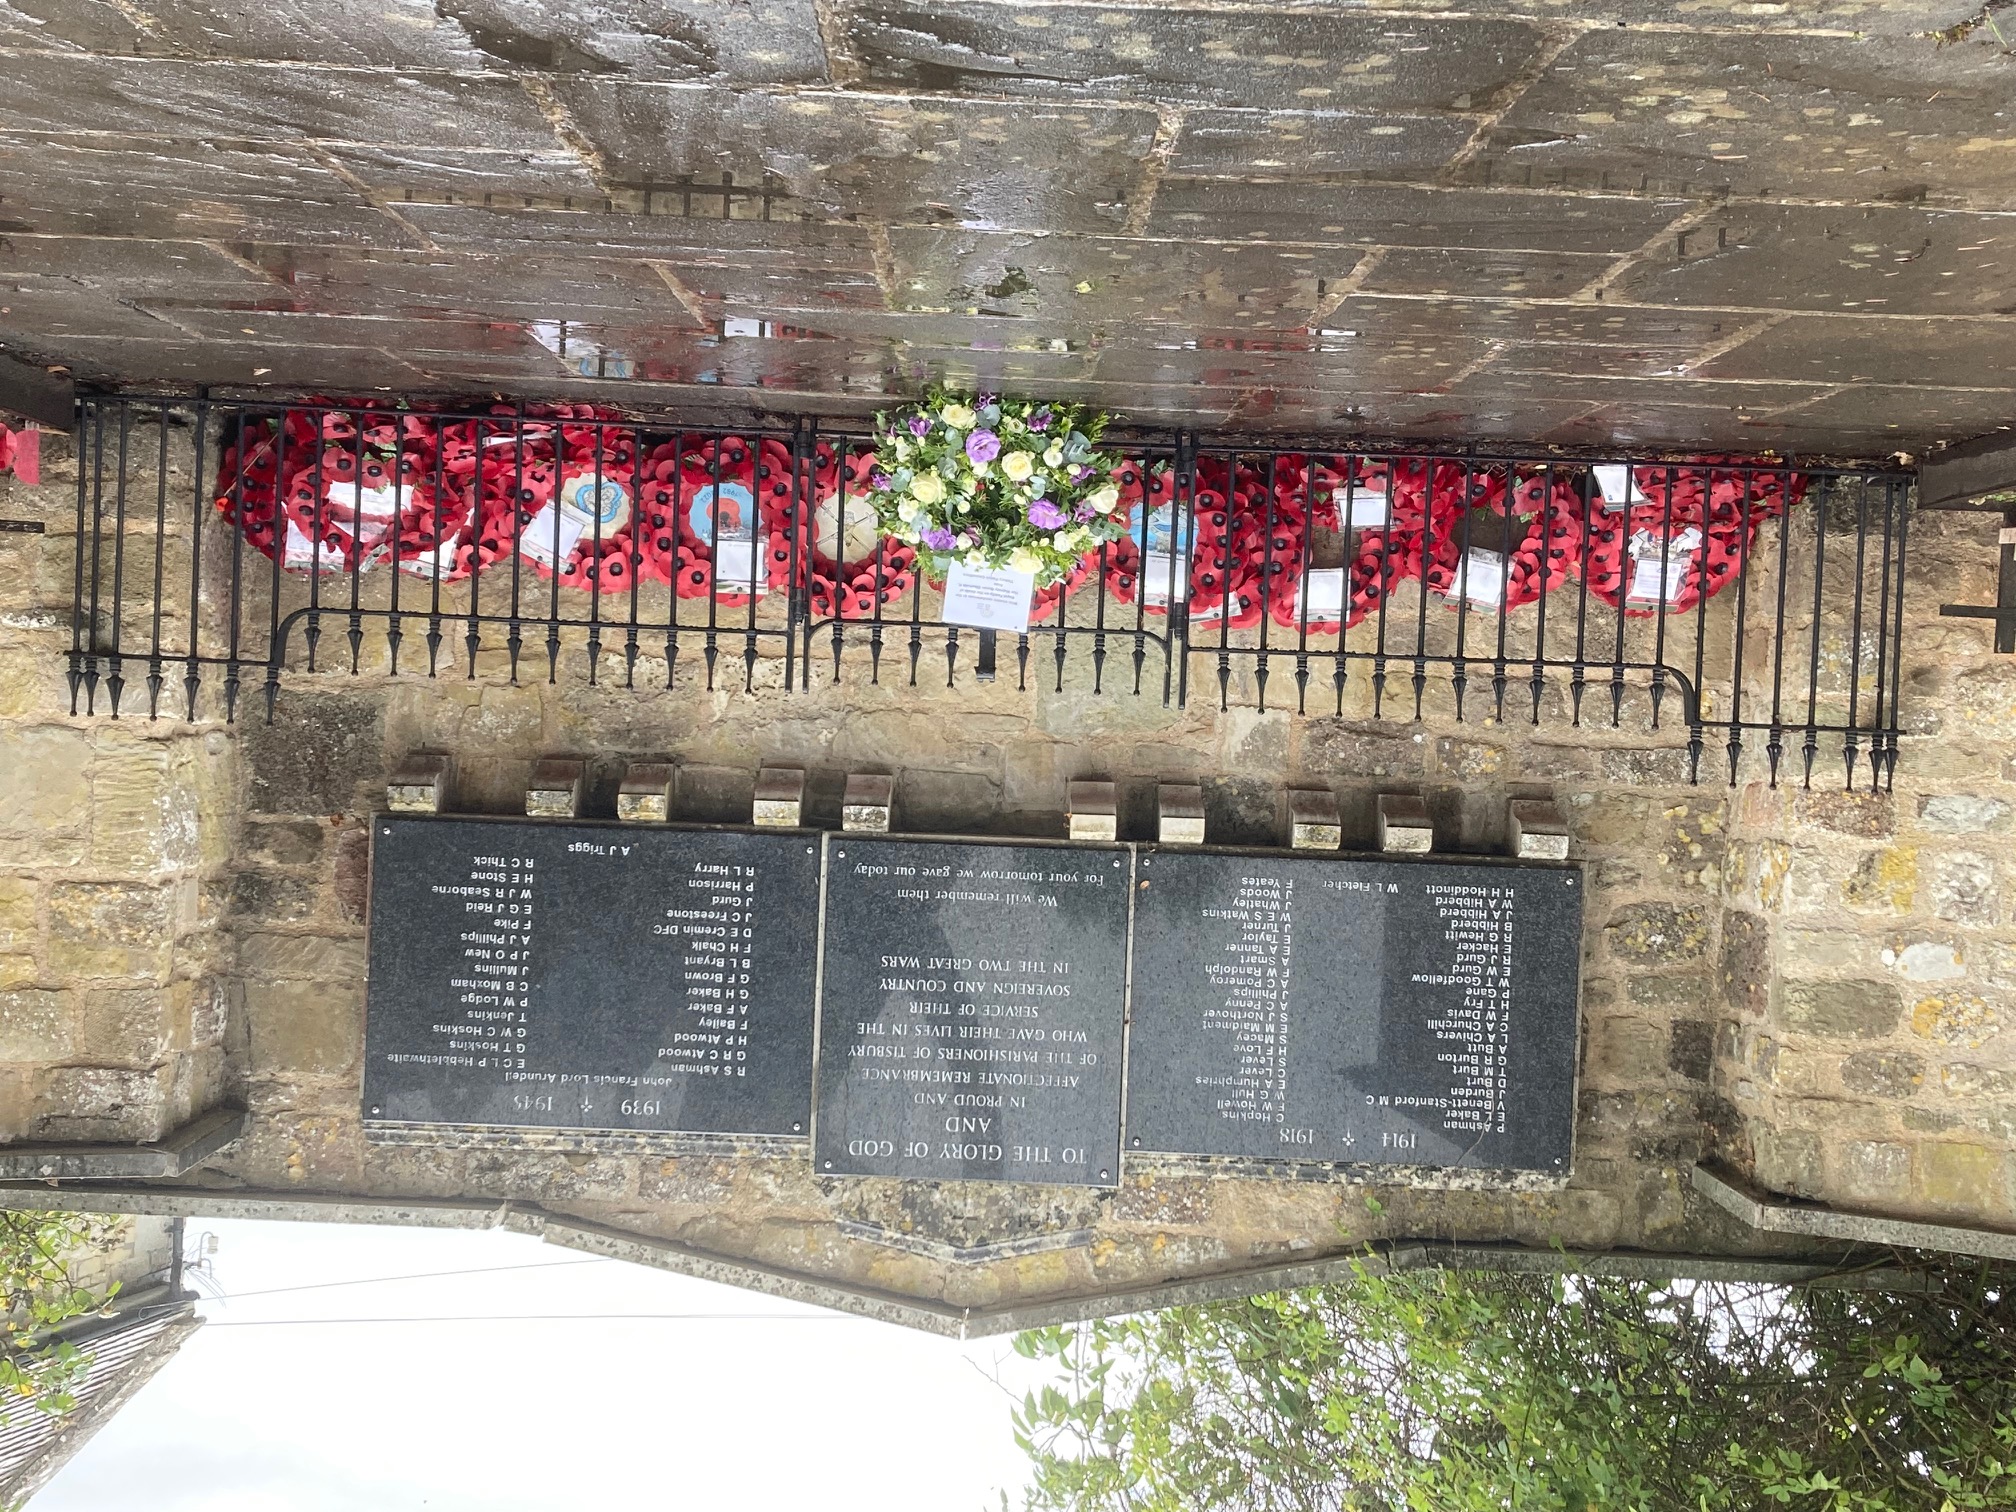 War Memorial With Wreath for HM Queen Sept 2022.jpg